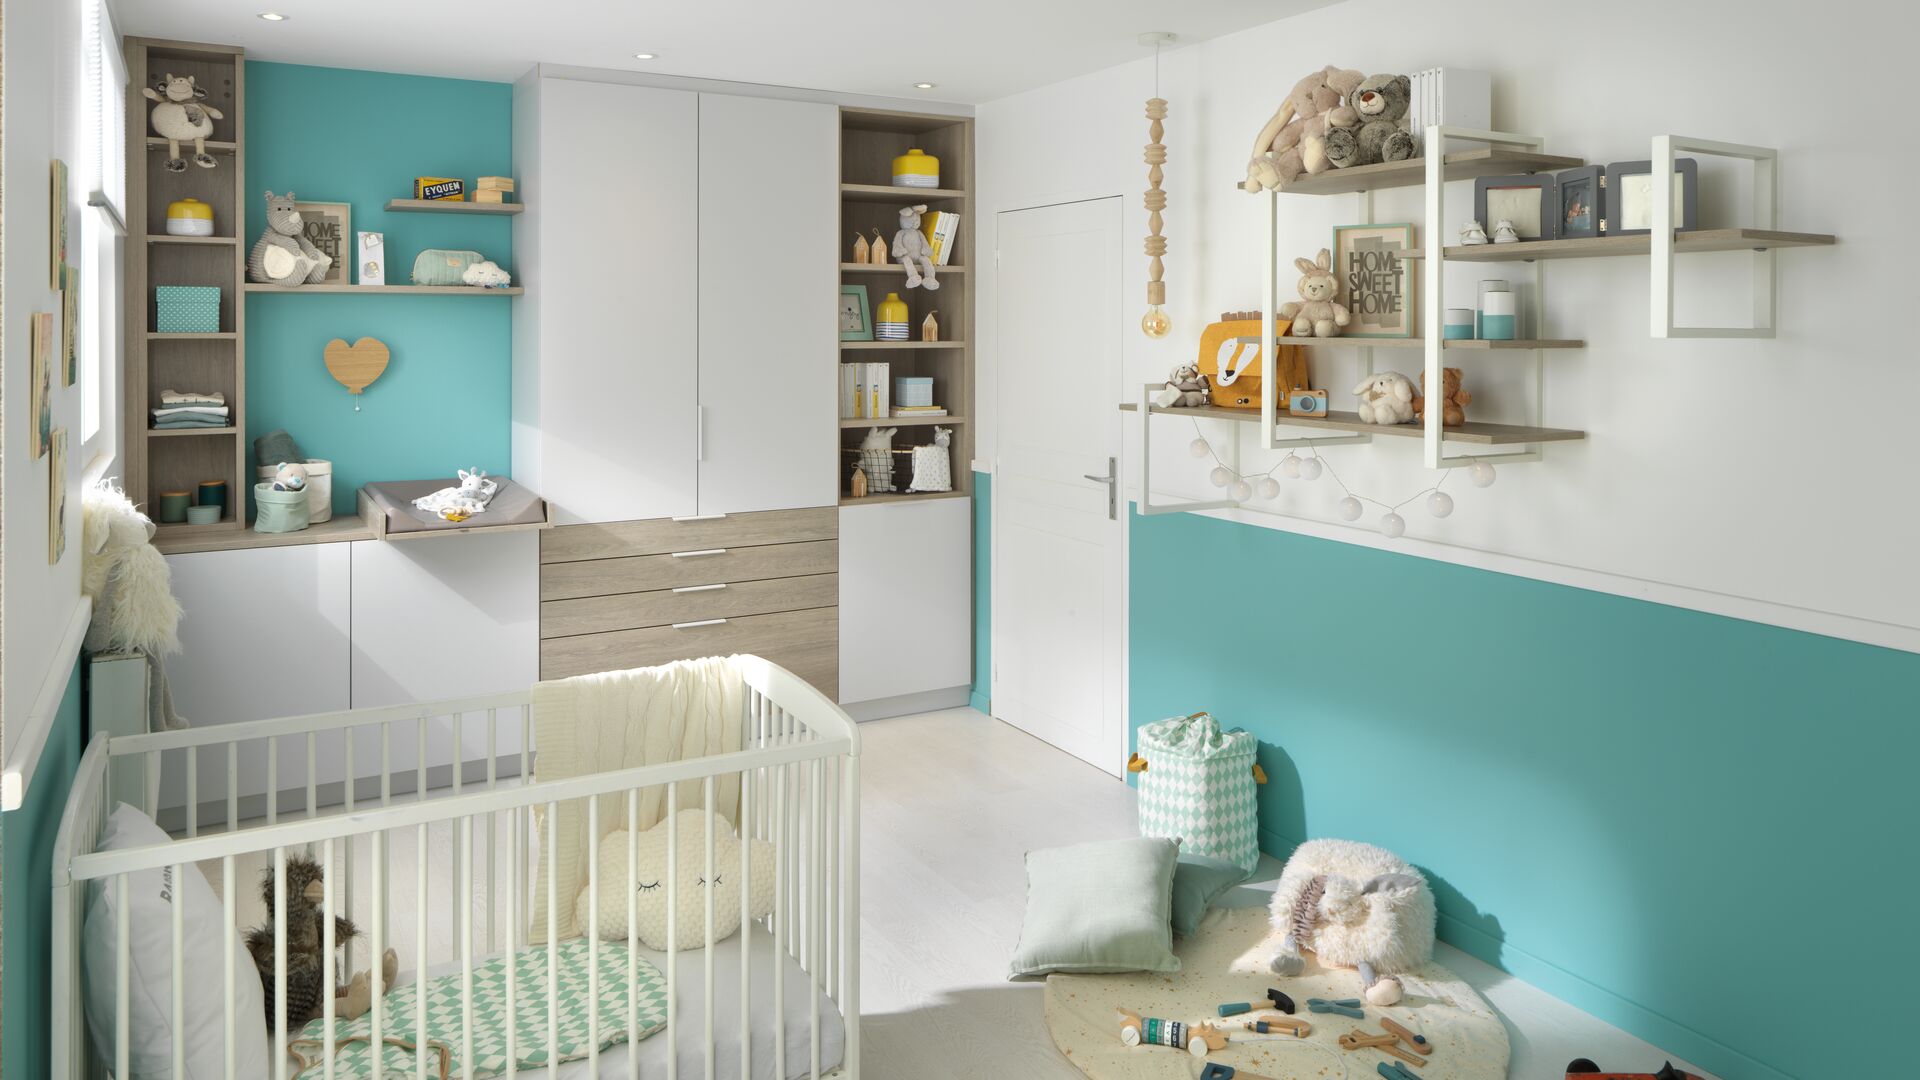 Vue d'ensemble de la chambre bébé, avec le lit au premier plan, le meuble souspendu à droite, et le rangement avec penderie en deuxième plan